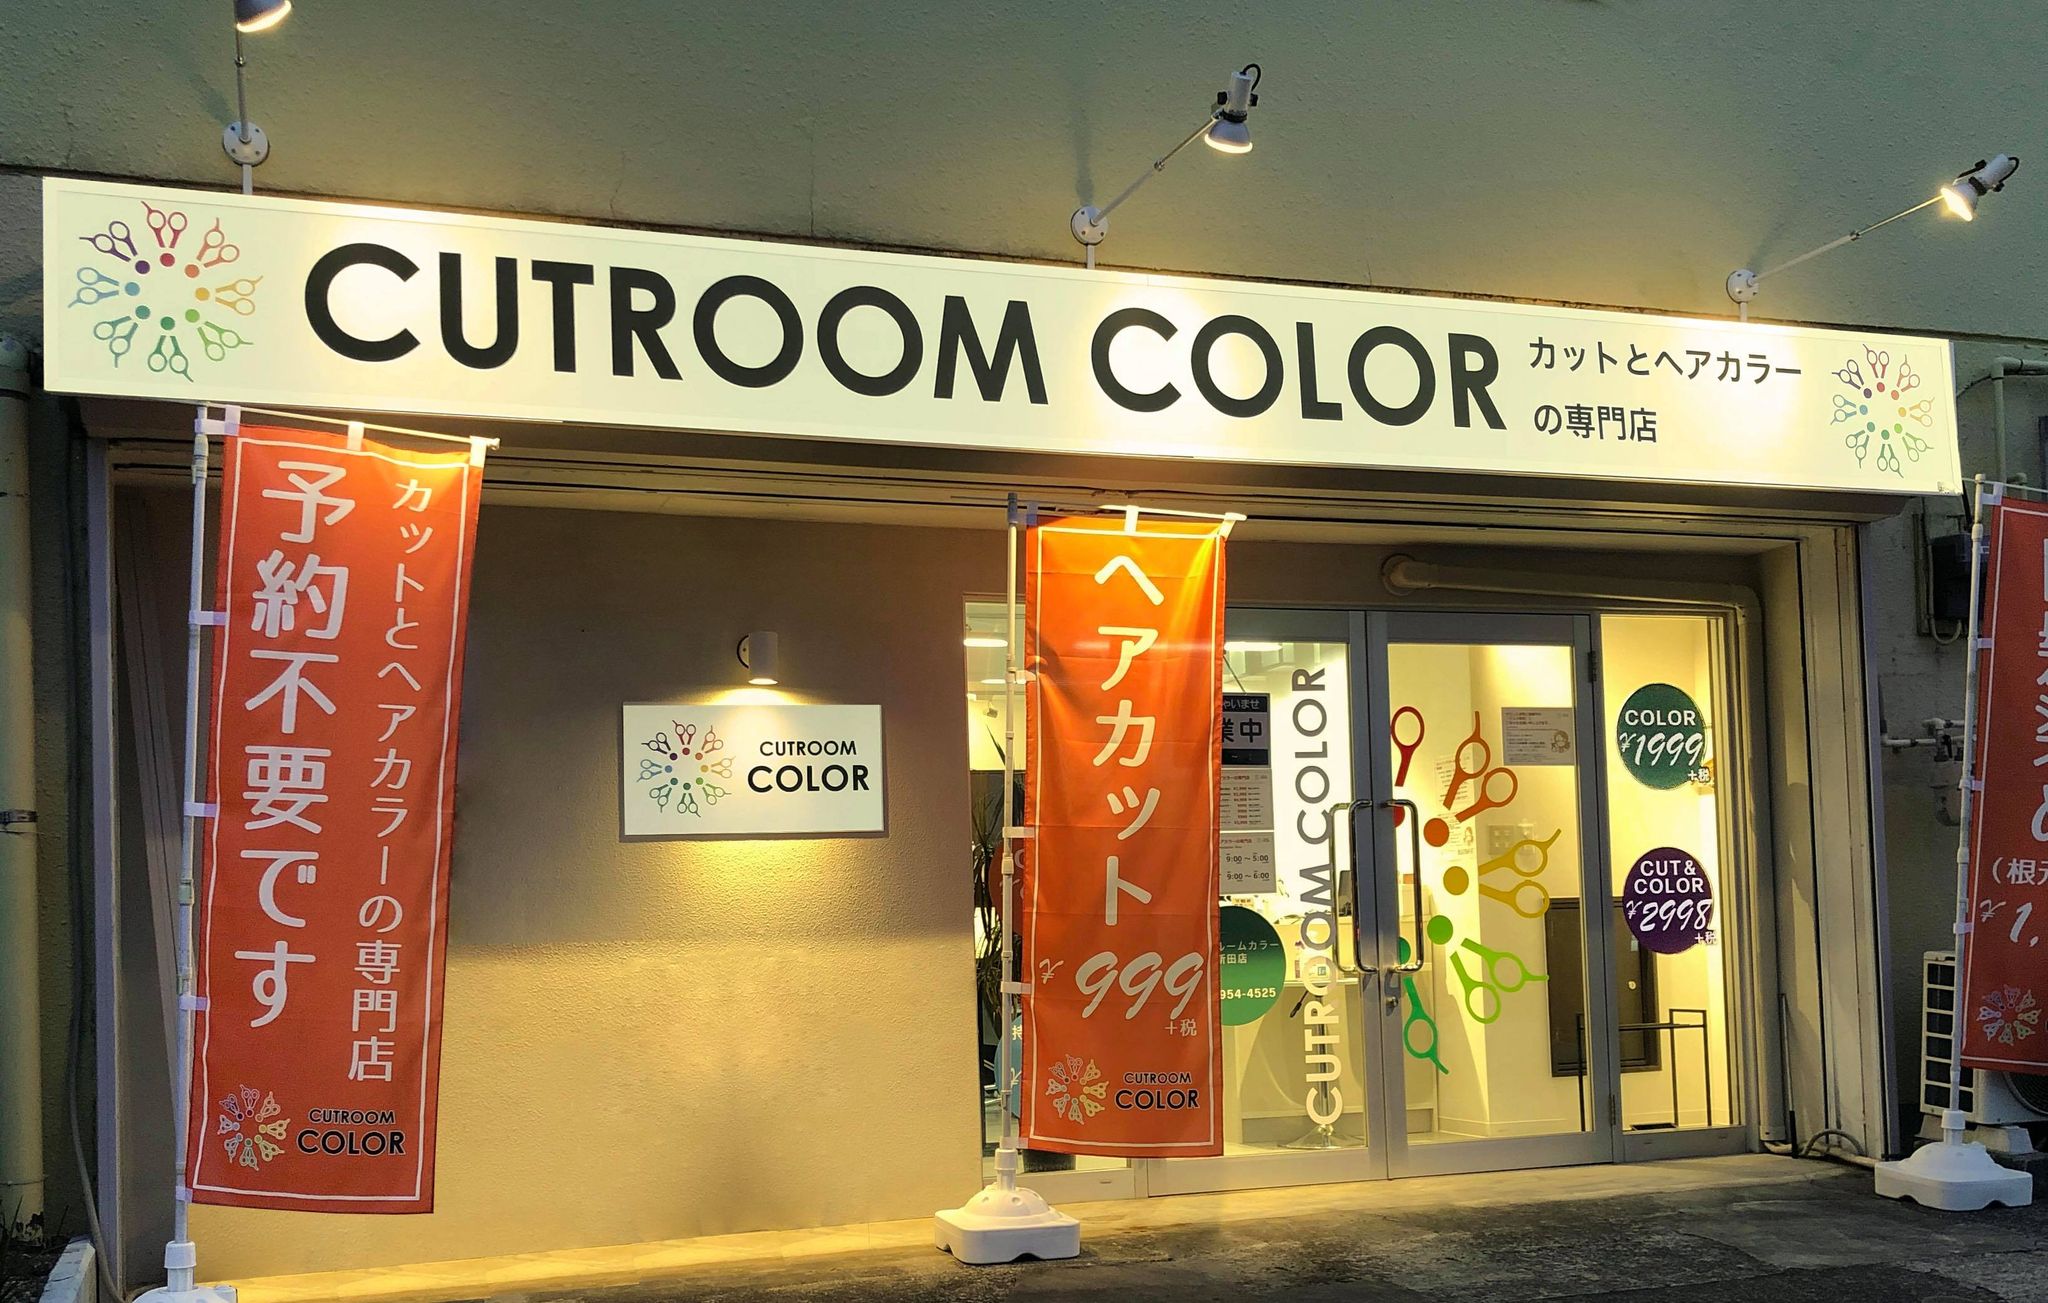 新田店 Fc 1000円カットより安い 回数券なら日本一安く 白髪染めも可能なカットルームカラー